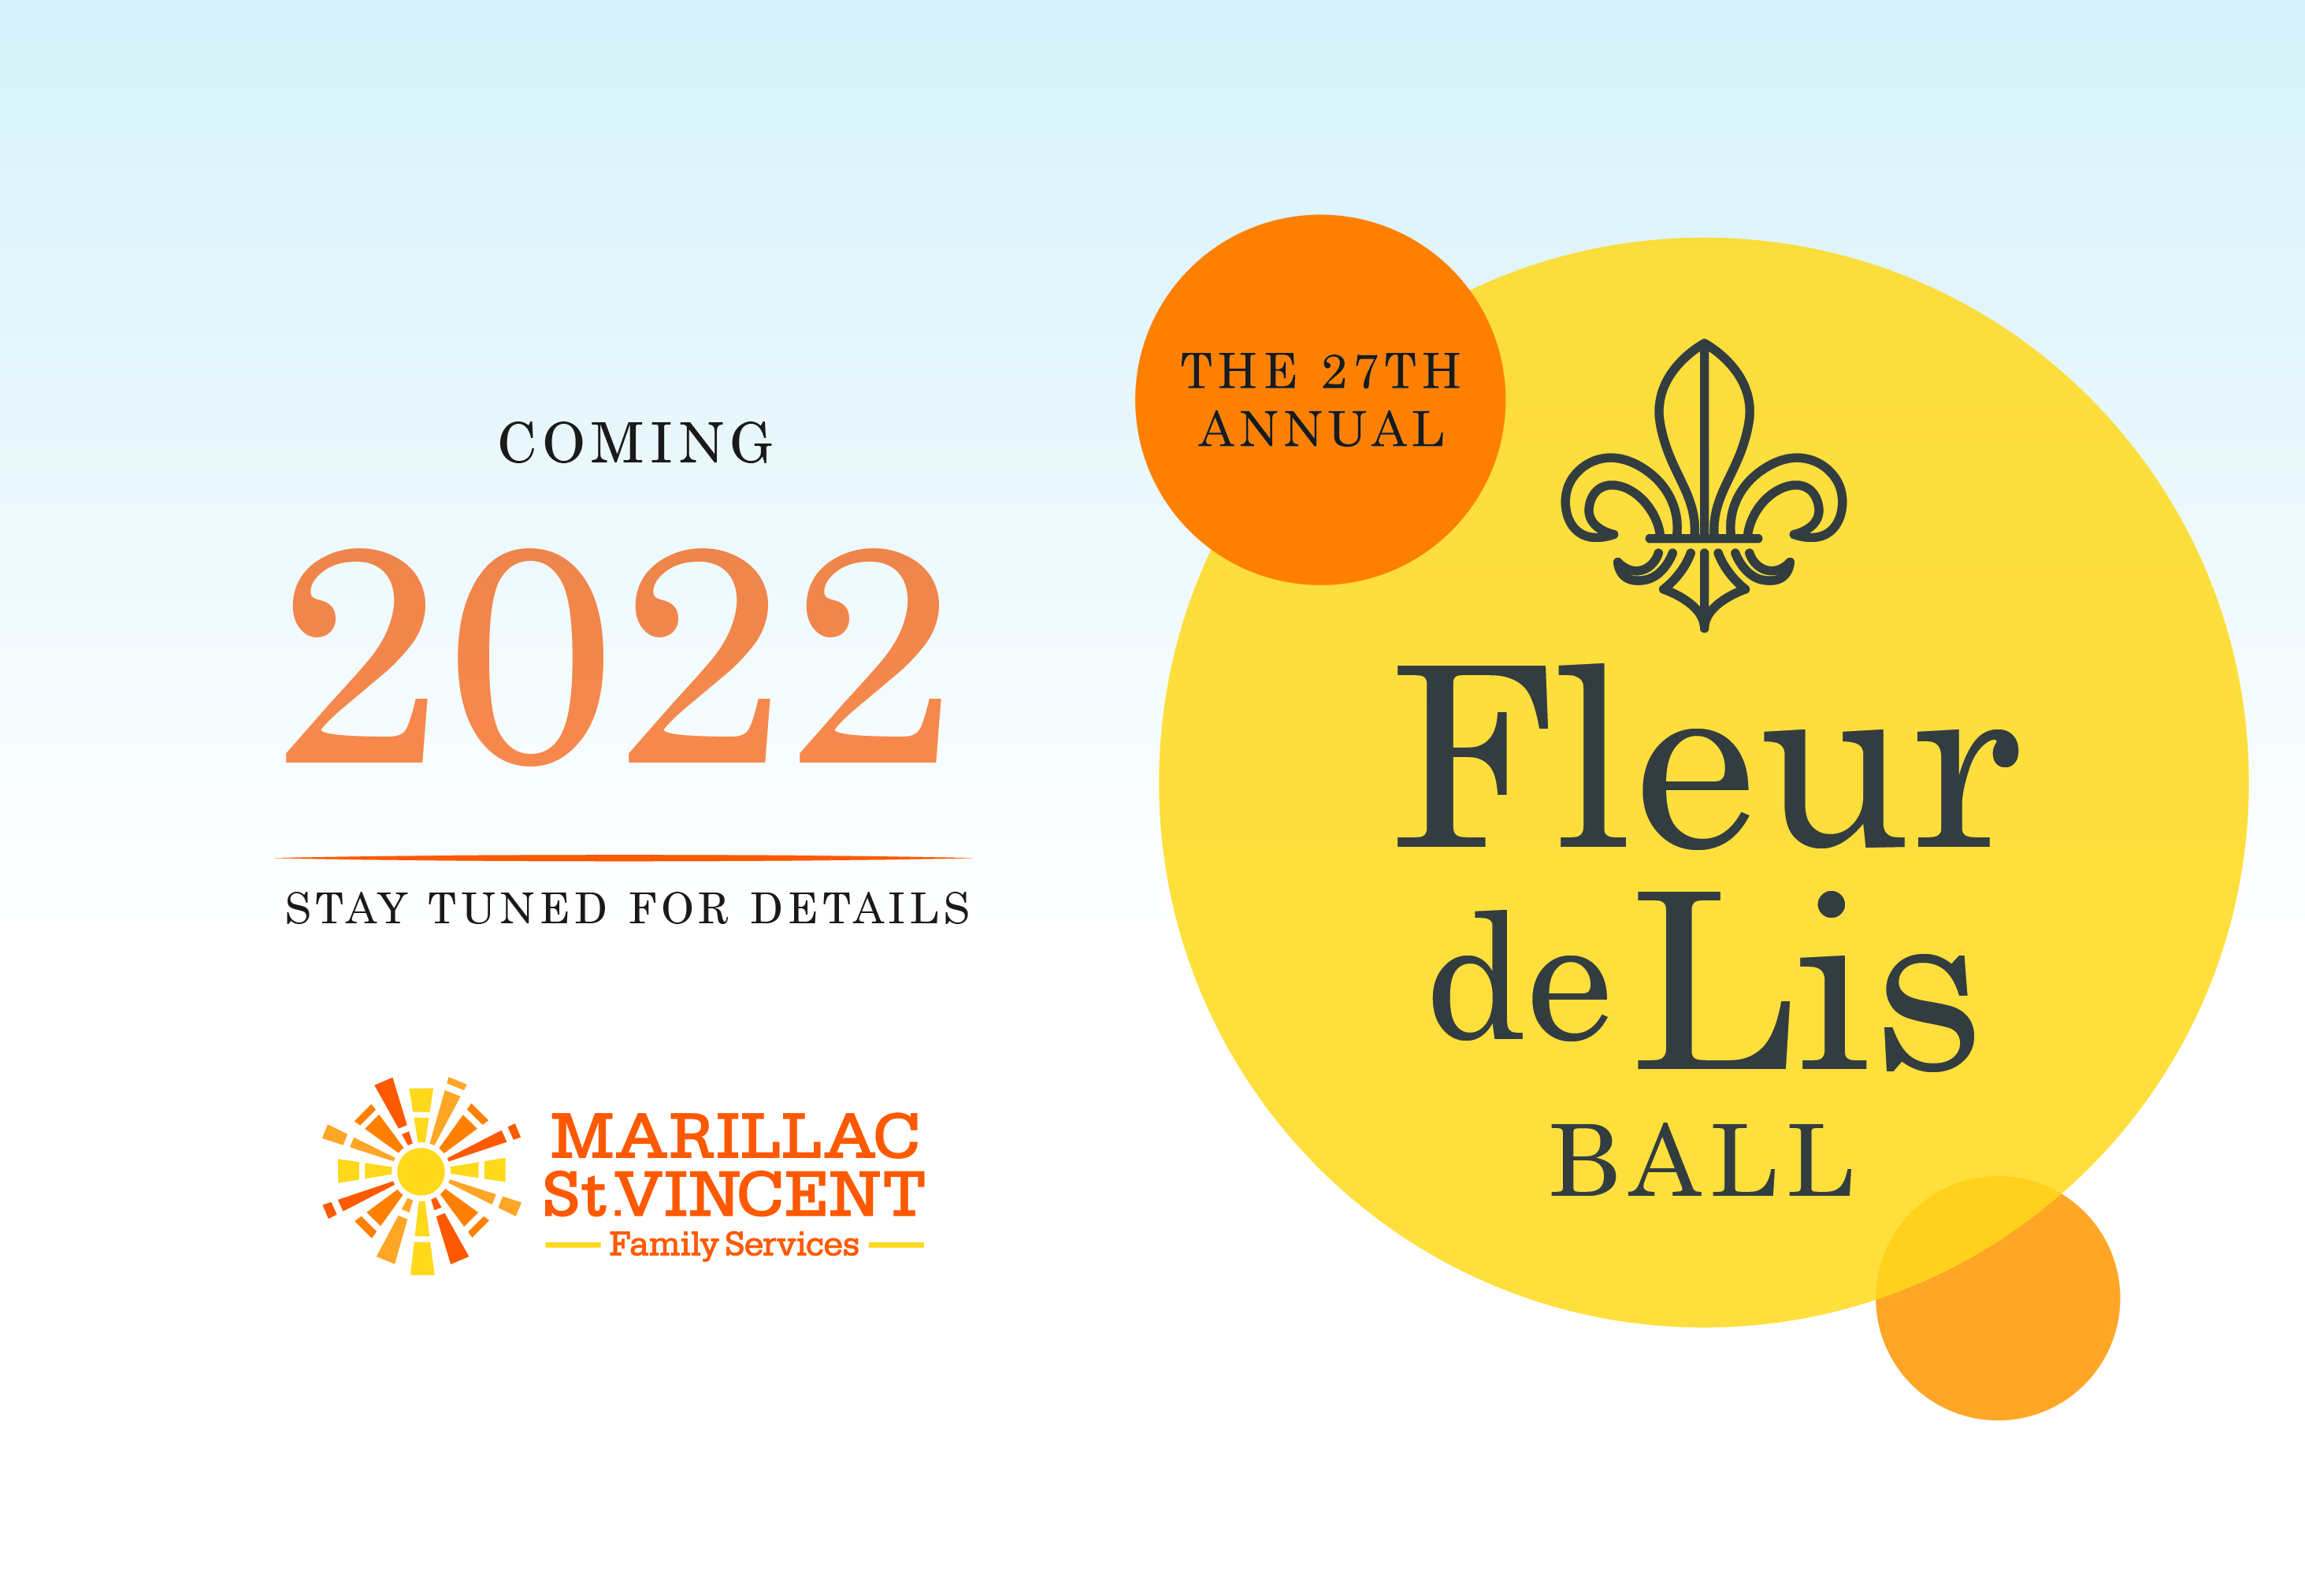 The 27th Annual Fleur de Lis Ball